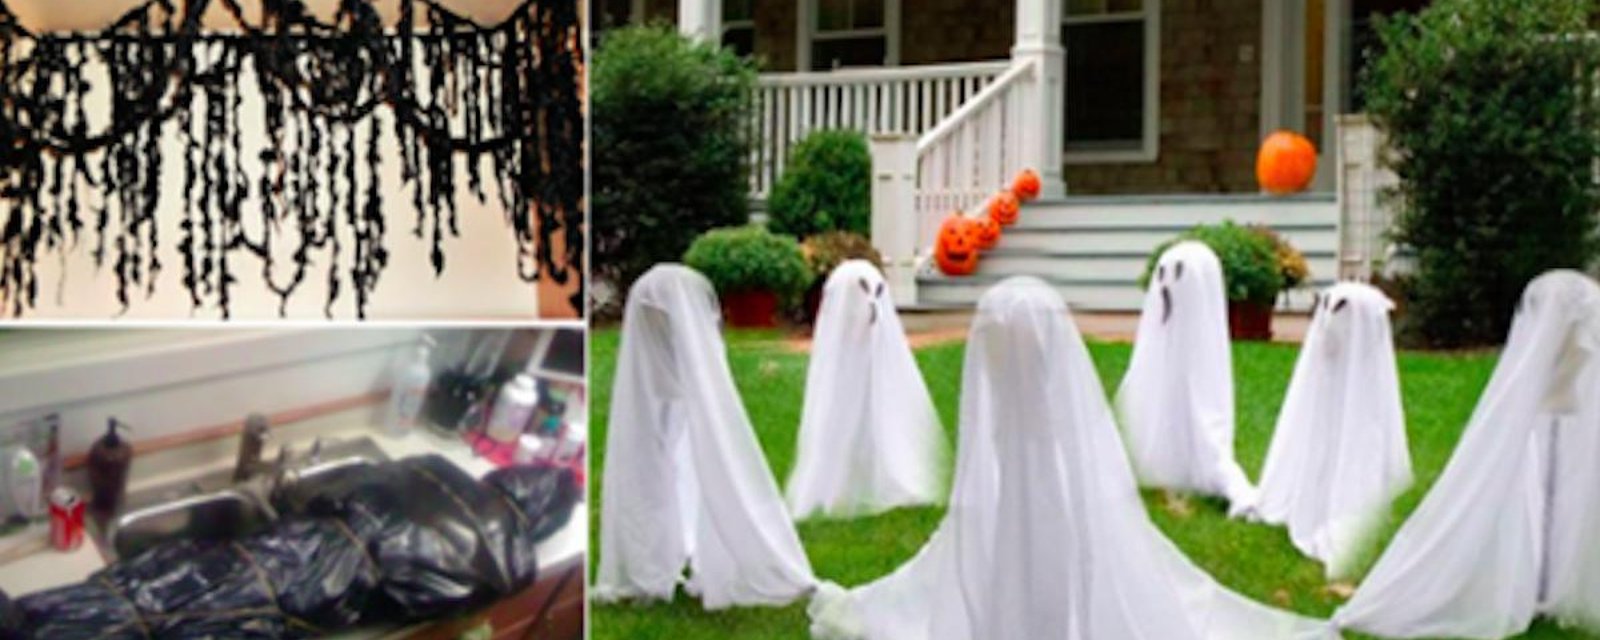 13 idées de décorations d'Halloween à fabriquer à partir de simples sacs-poubelle